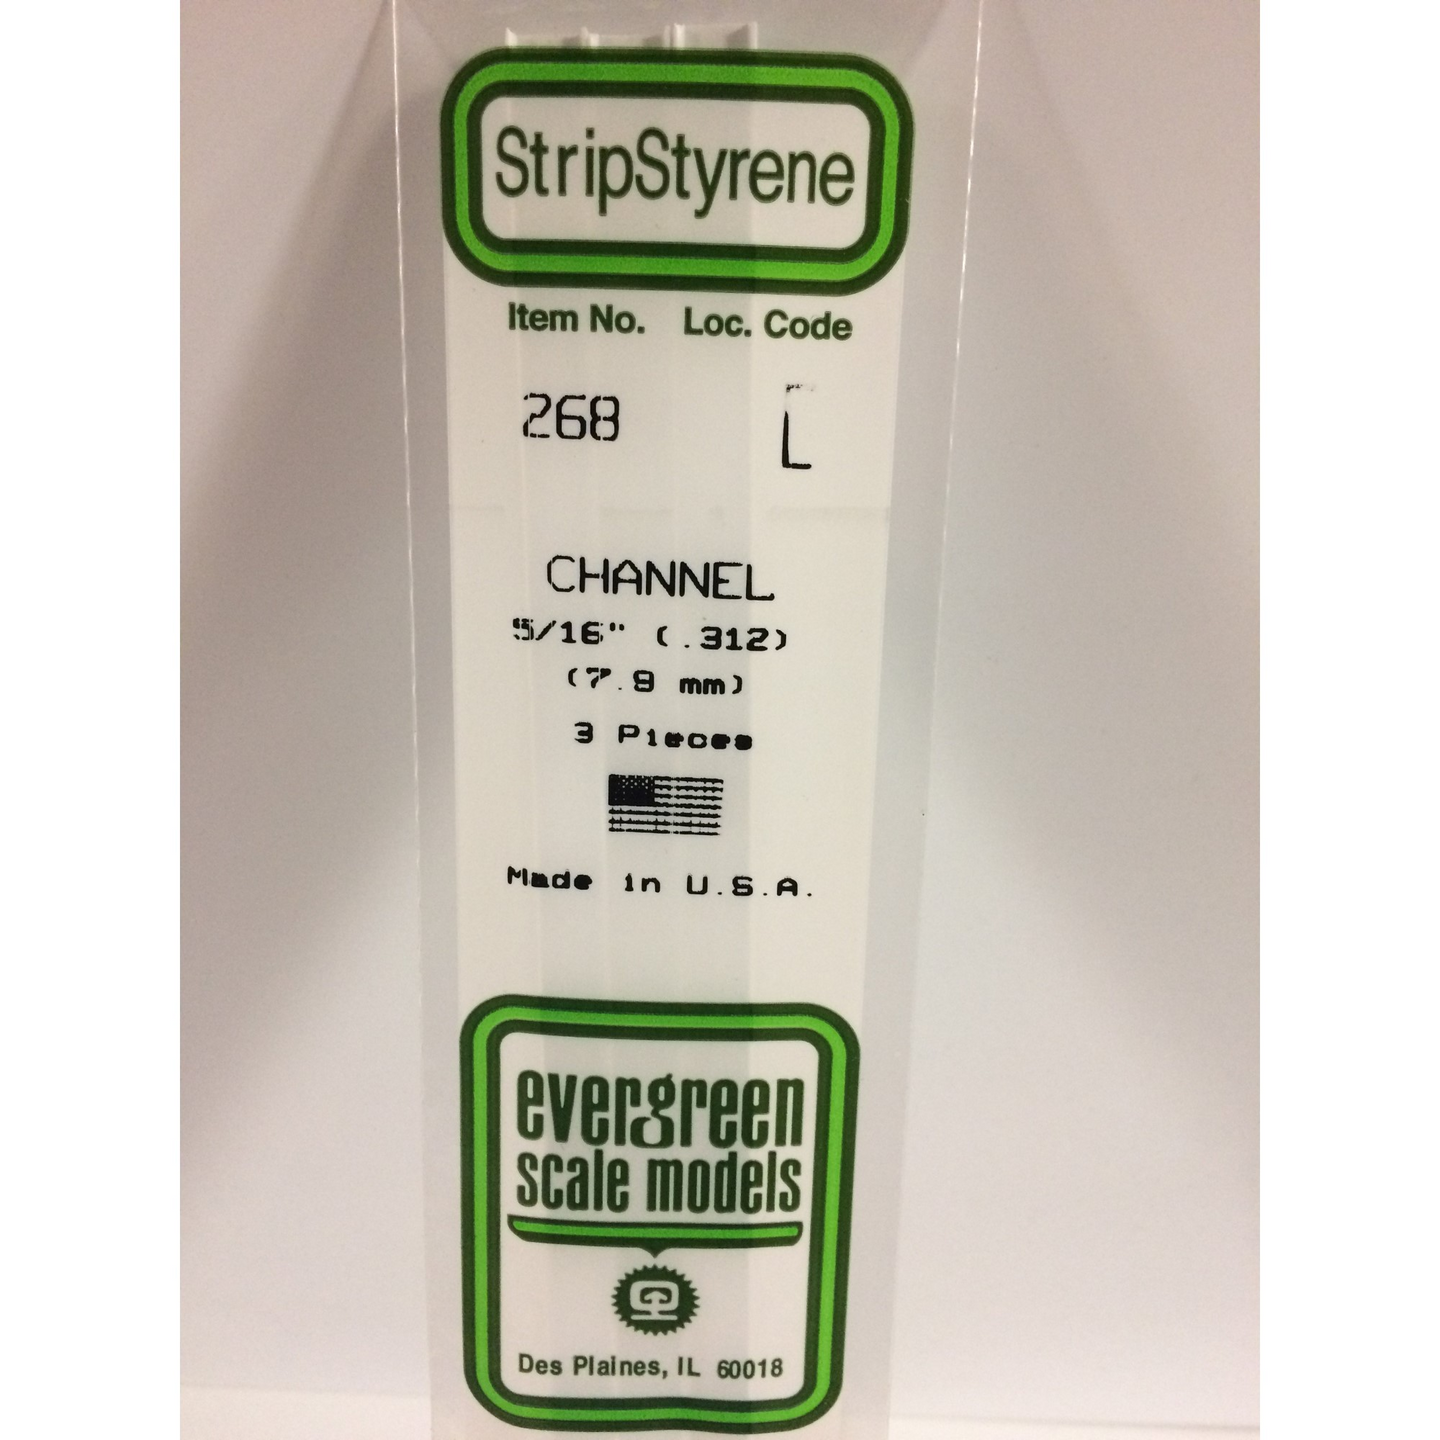 Evergreen 268 Styrene Plastic Channel 0.312